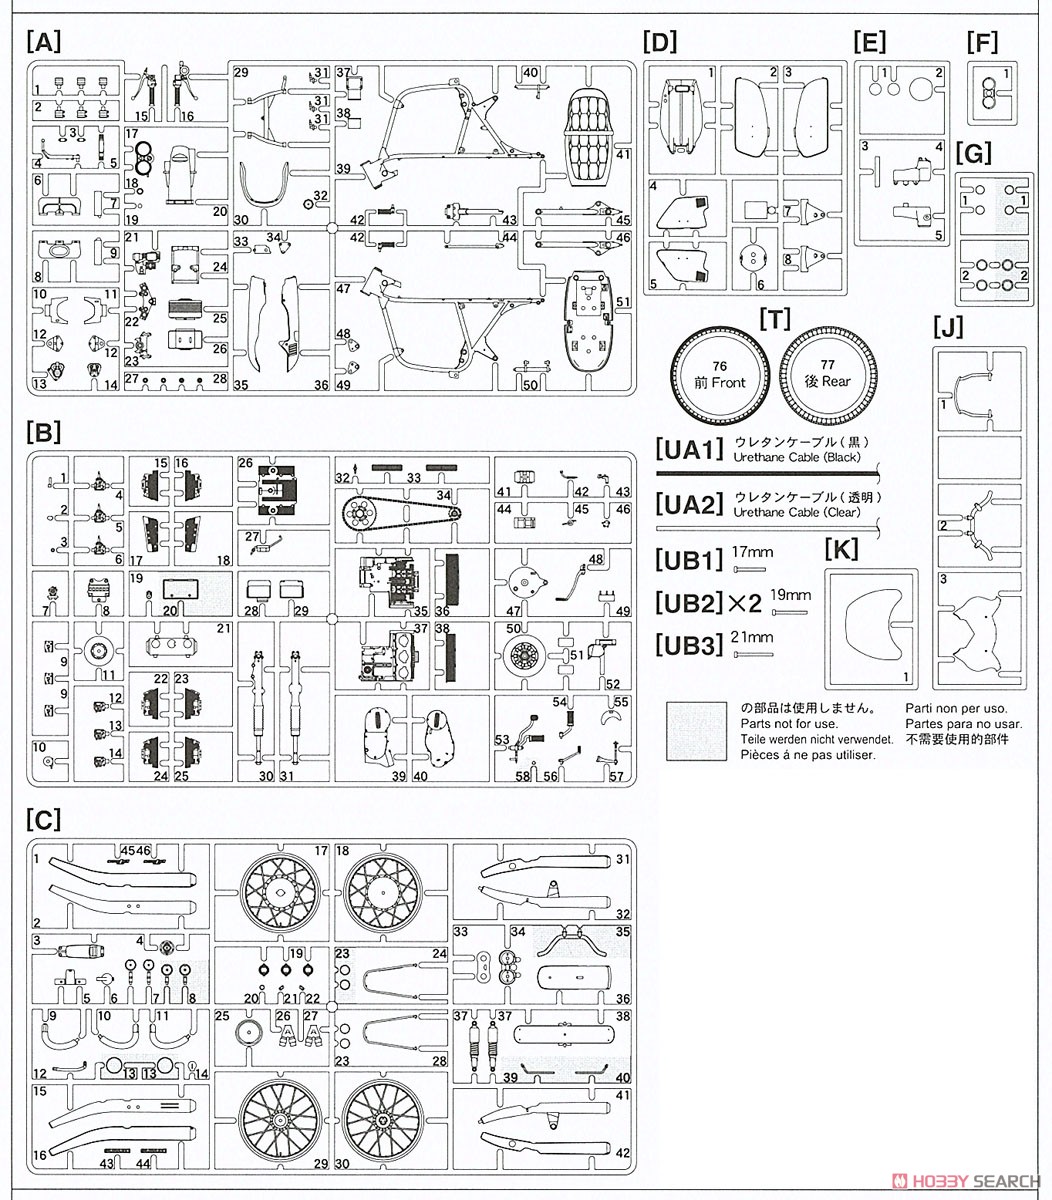 「仮面ライダー」 本郷猛のバイク [スズキ GT380 B] (プラモデル) 設計図11